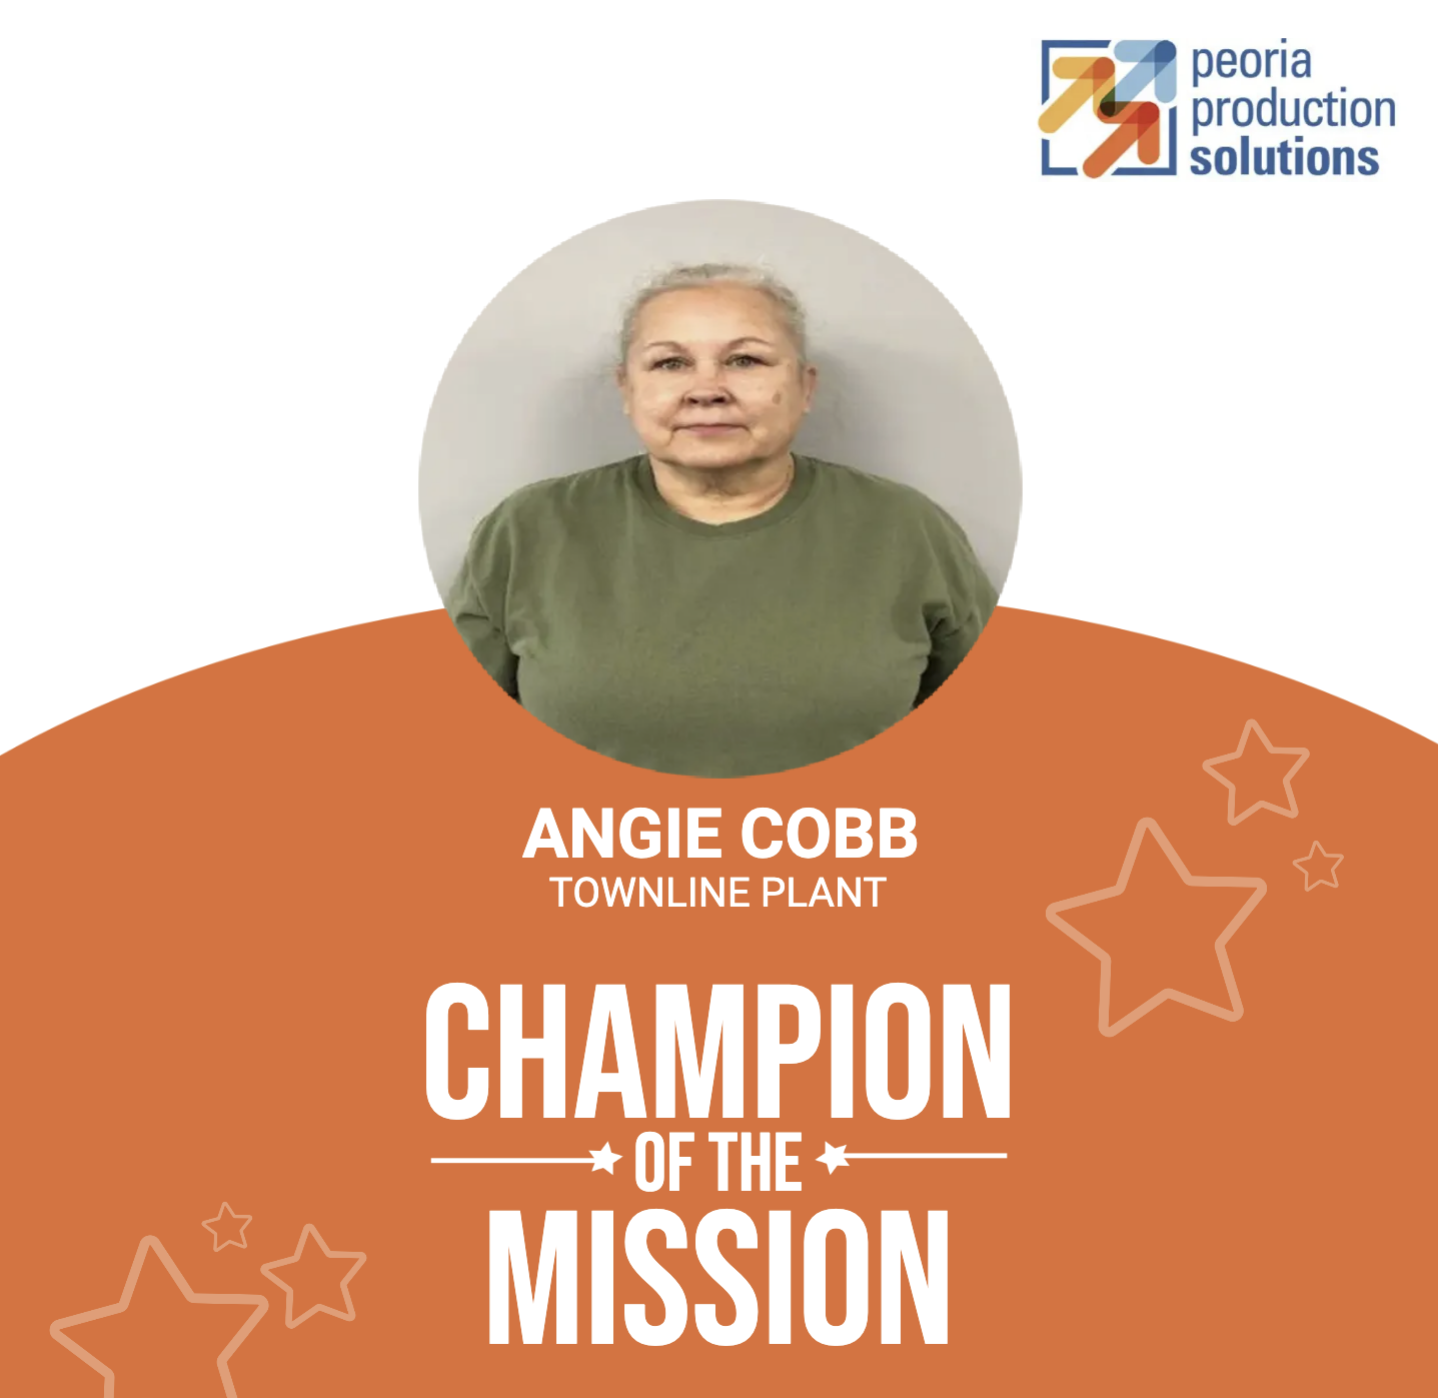 Angie Cobb